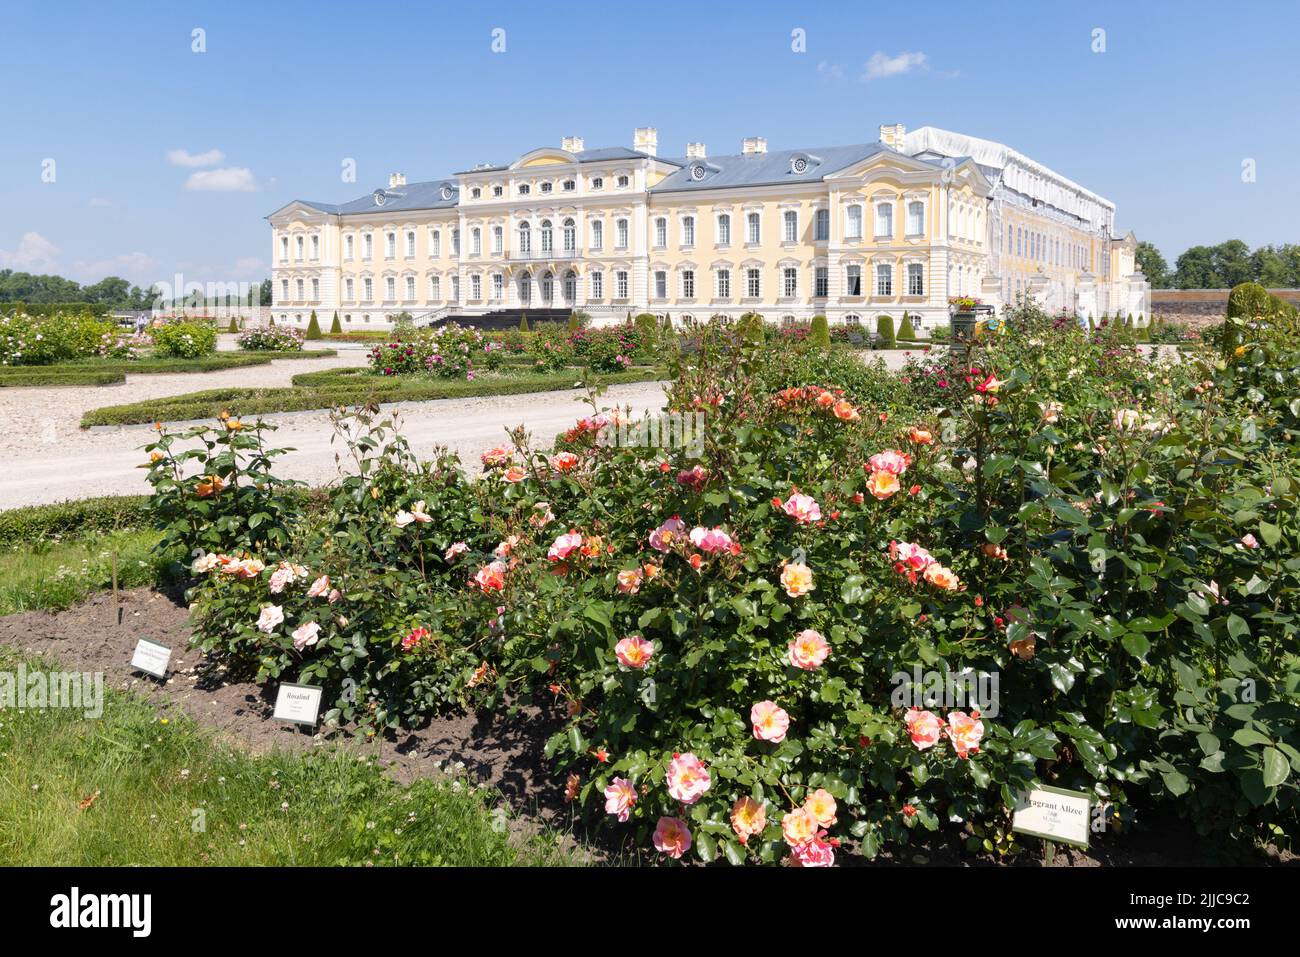 Rundale Palace, Lettonia; esterno, palazzo barocco del 18th secolo costruito da Ernst Johann von Biron nel 1700s, ora un museo e giardino, Lettonia, Europa Foto Stock